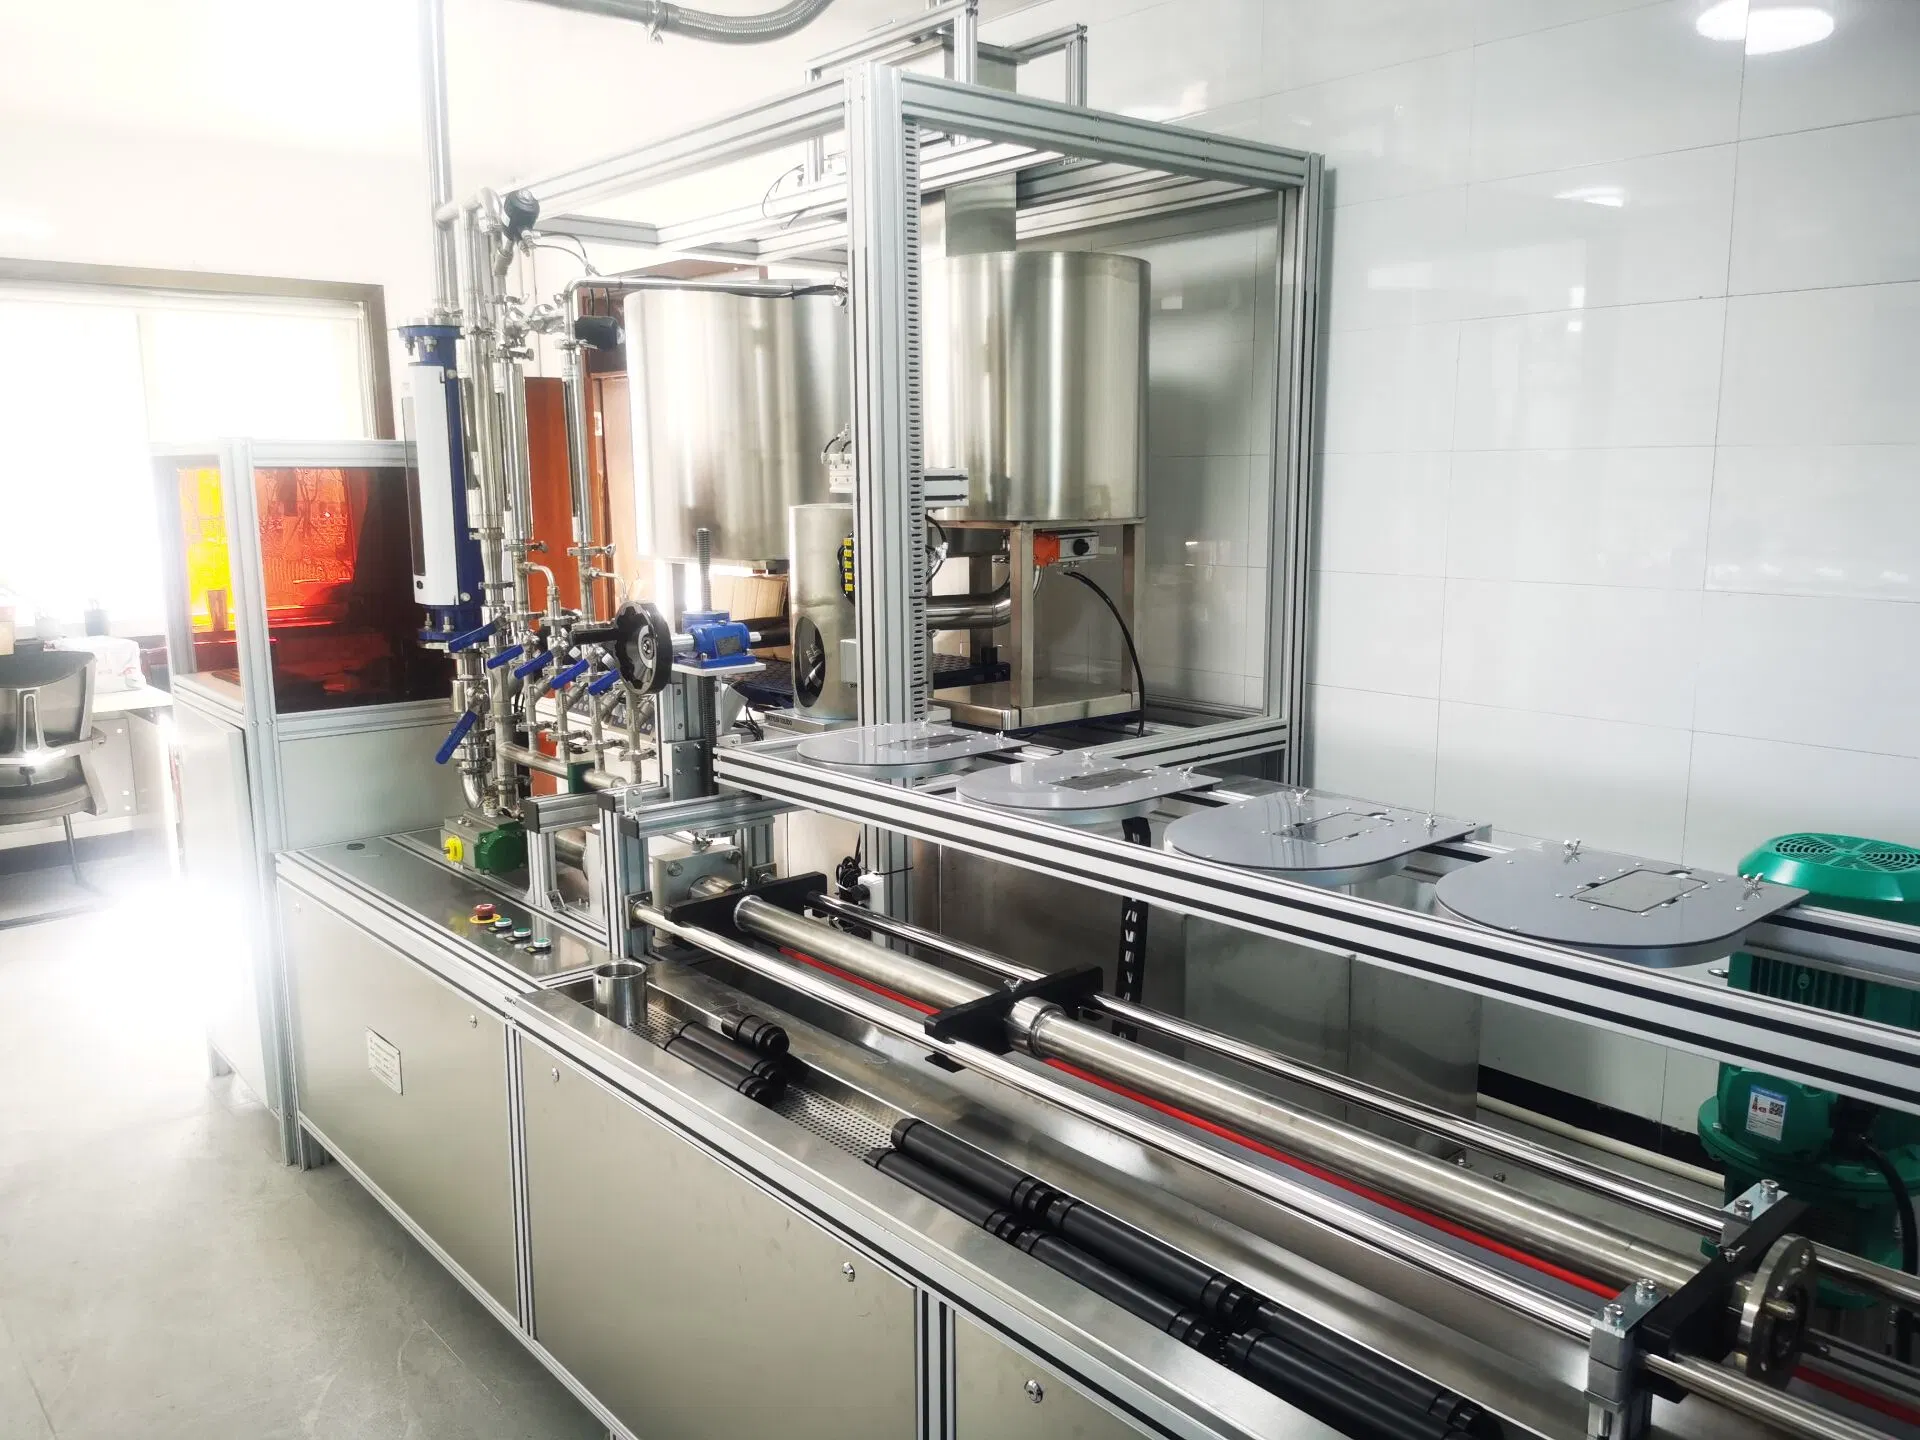 Chinesische Fabrik Automatische Kolben Machanischen Wasserzähler Testausrüstung